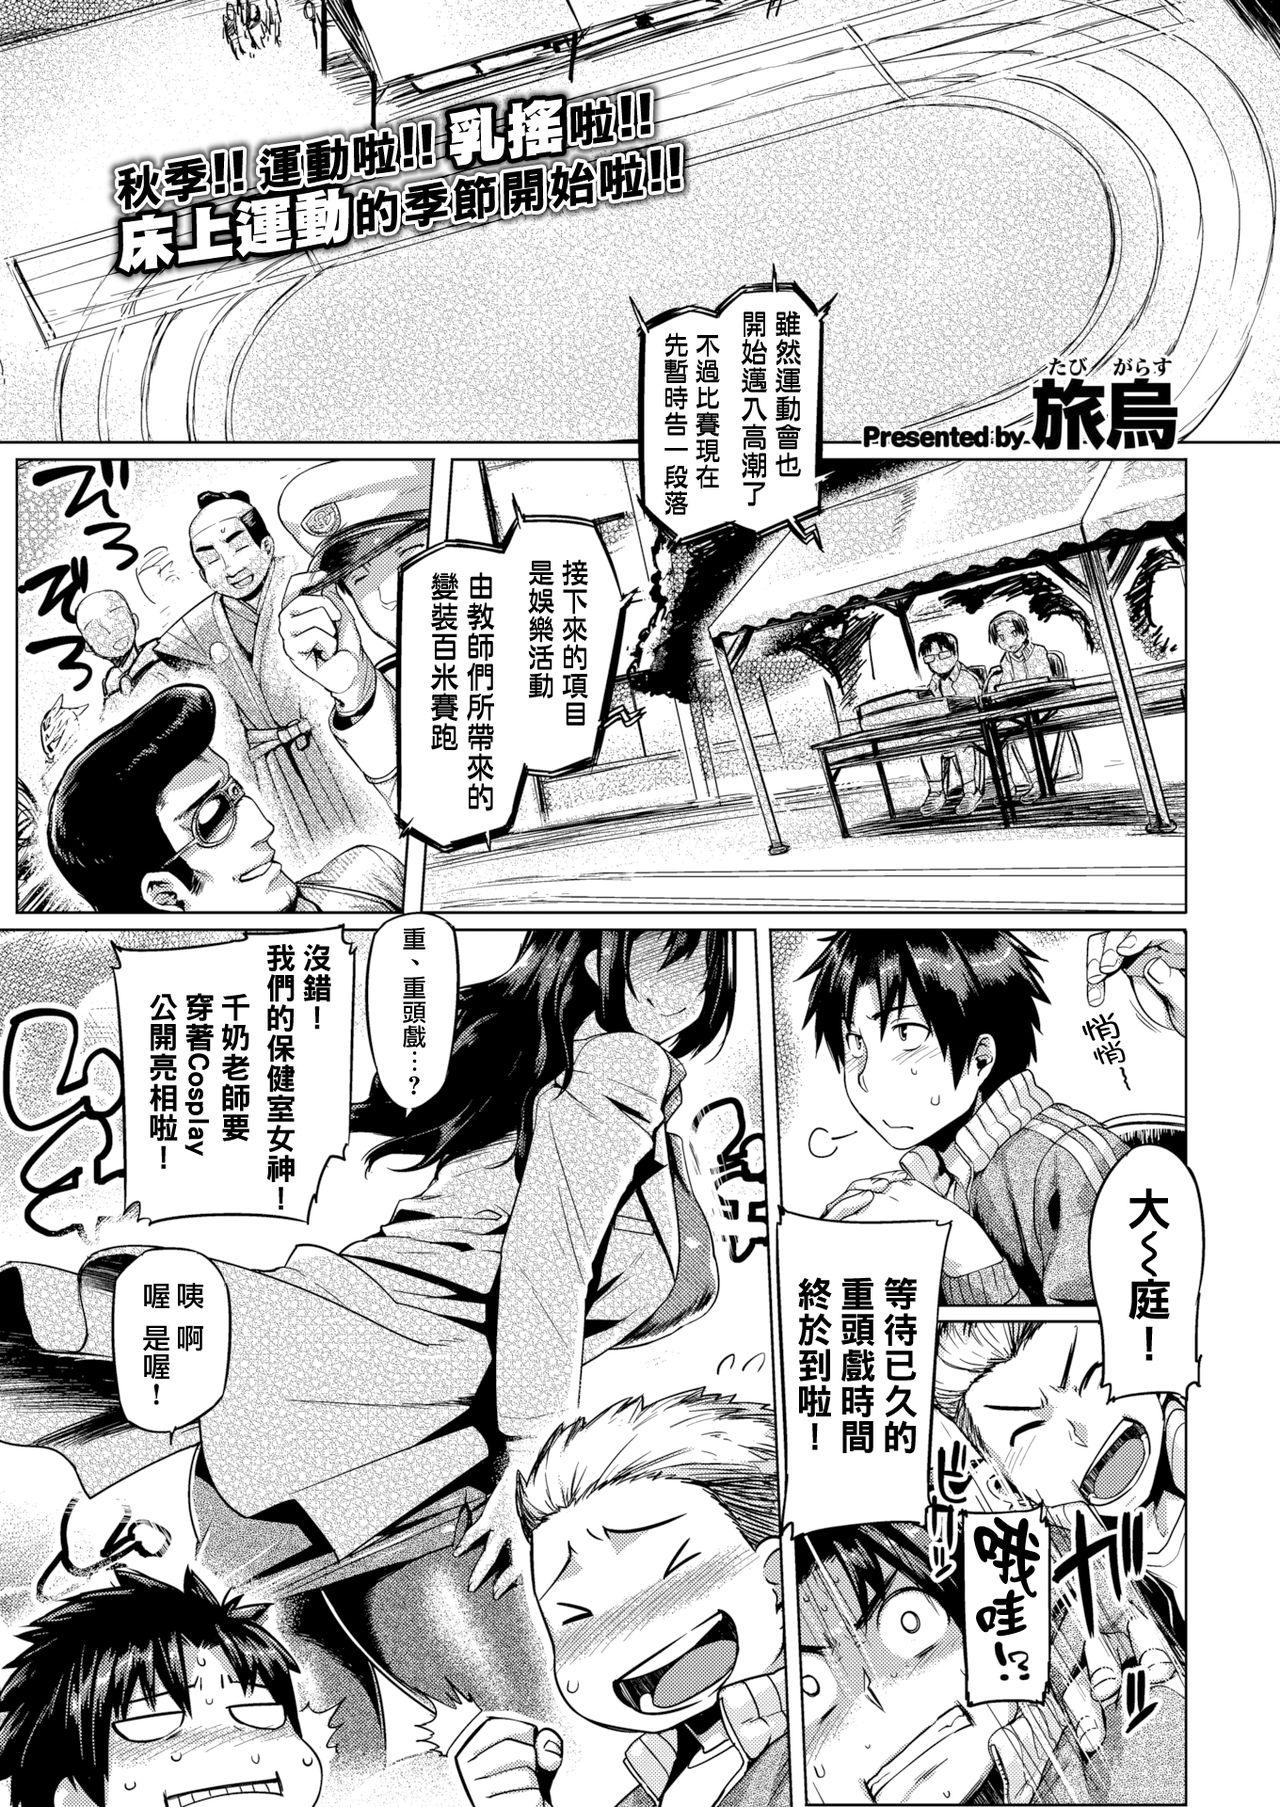 Culo Grande Boku no Chibusa-sensei Teenies - Page 2